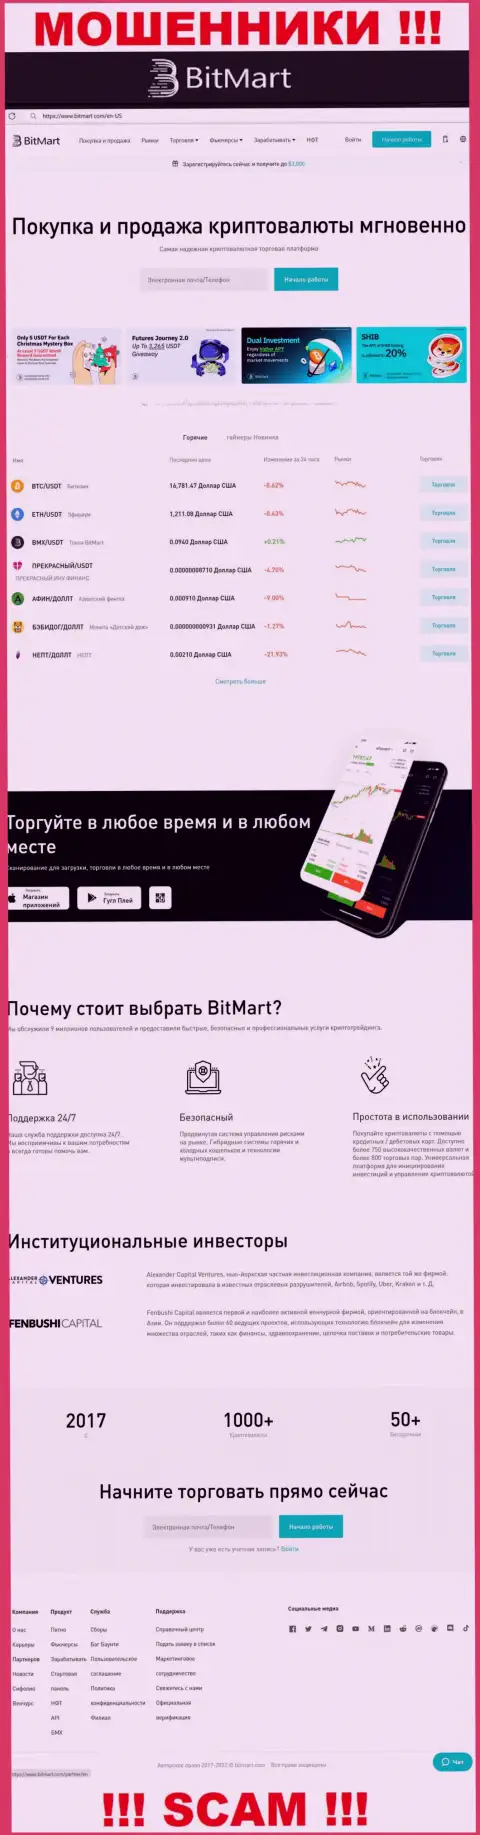 Вид официального информационного сервиса противозаконно действующей организации BitMart